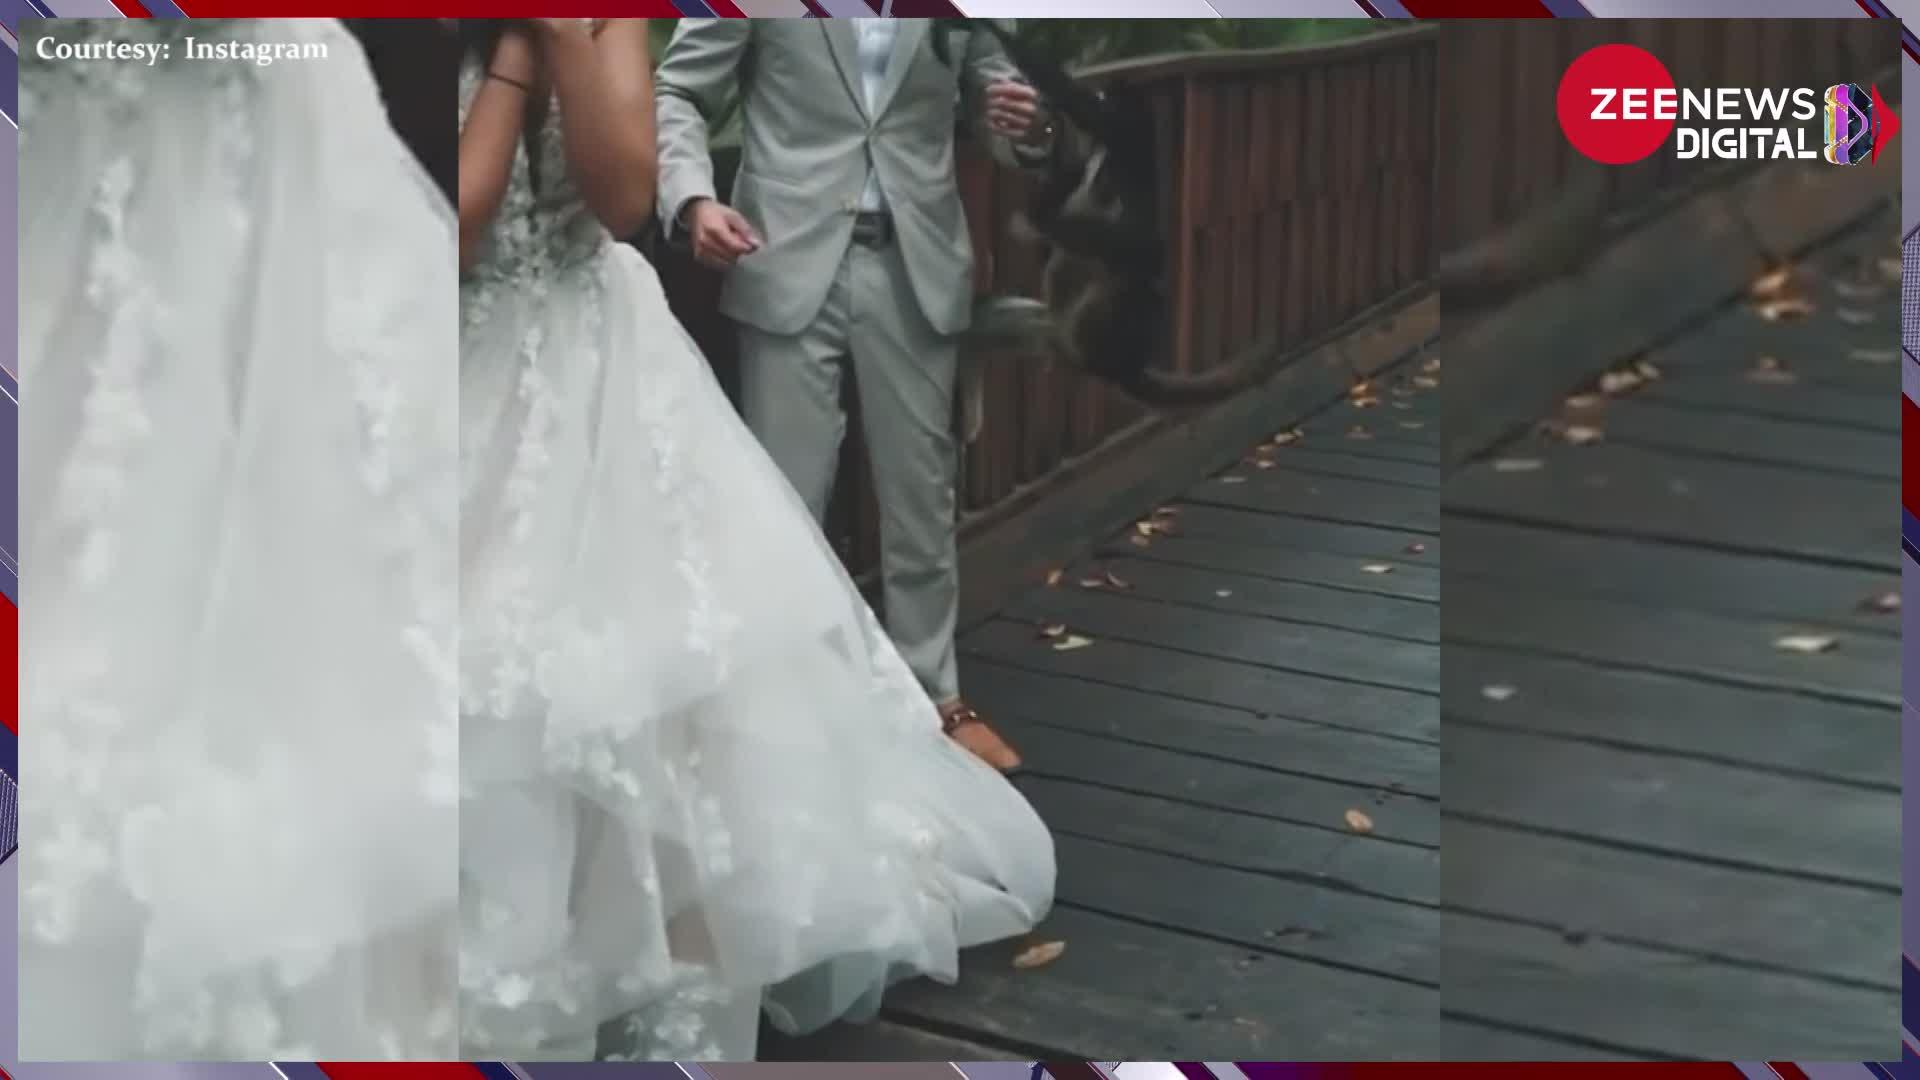 Wedding Photoshoot: वेडिंग फोटोशूट के बीच अचानक हुआ कुछ ऐसा, दुल्हन को छोड़ बंदरिया को गले लगाने लगा दूल्हा !